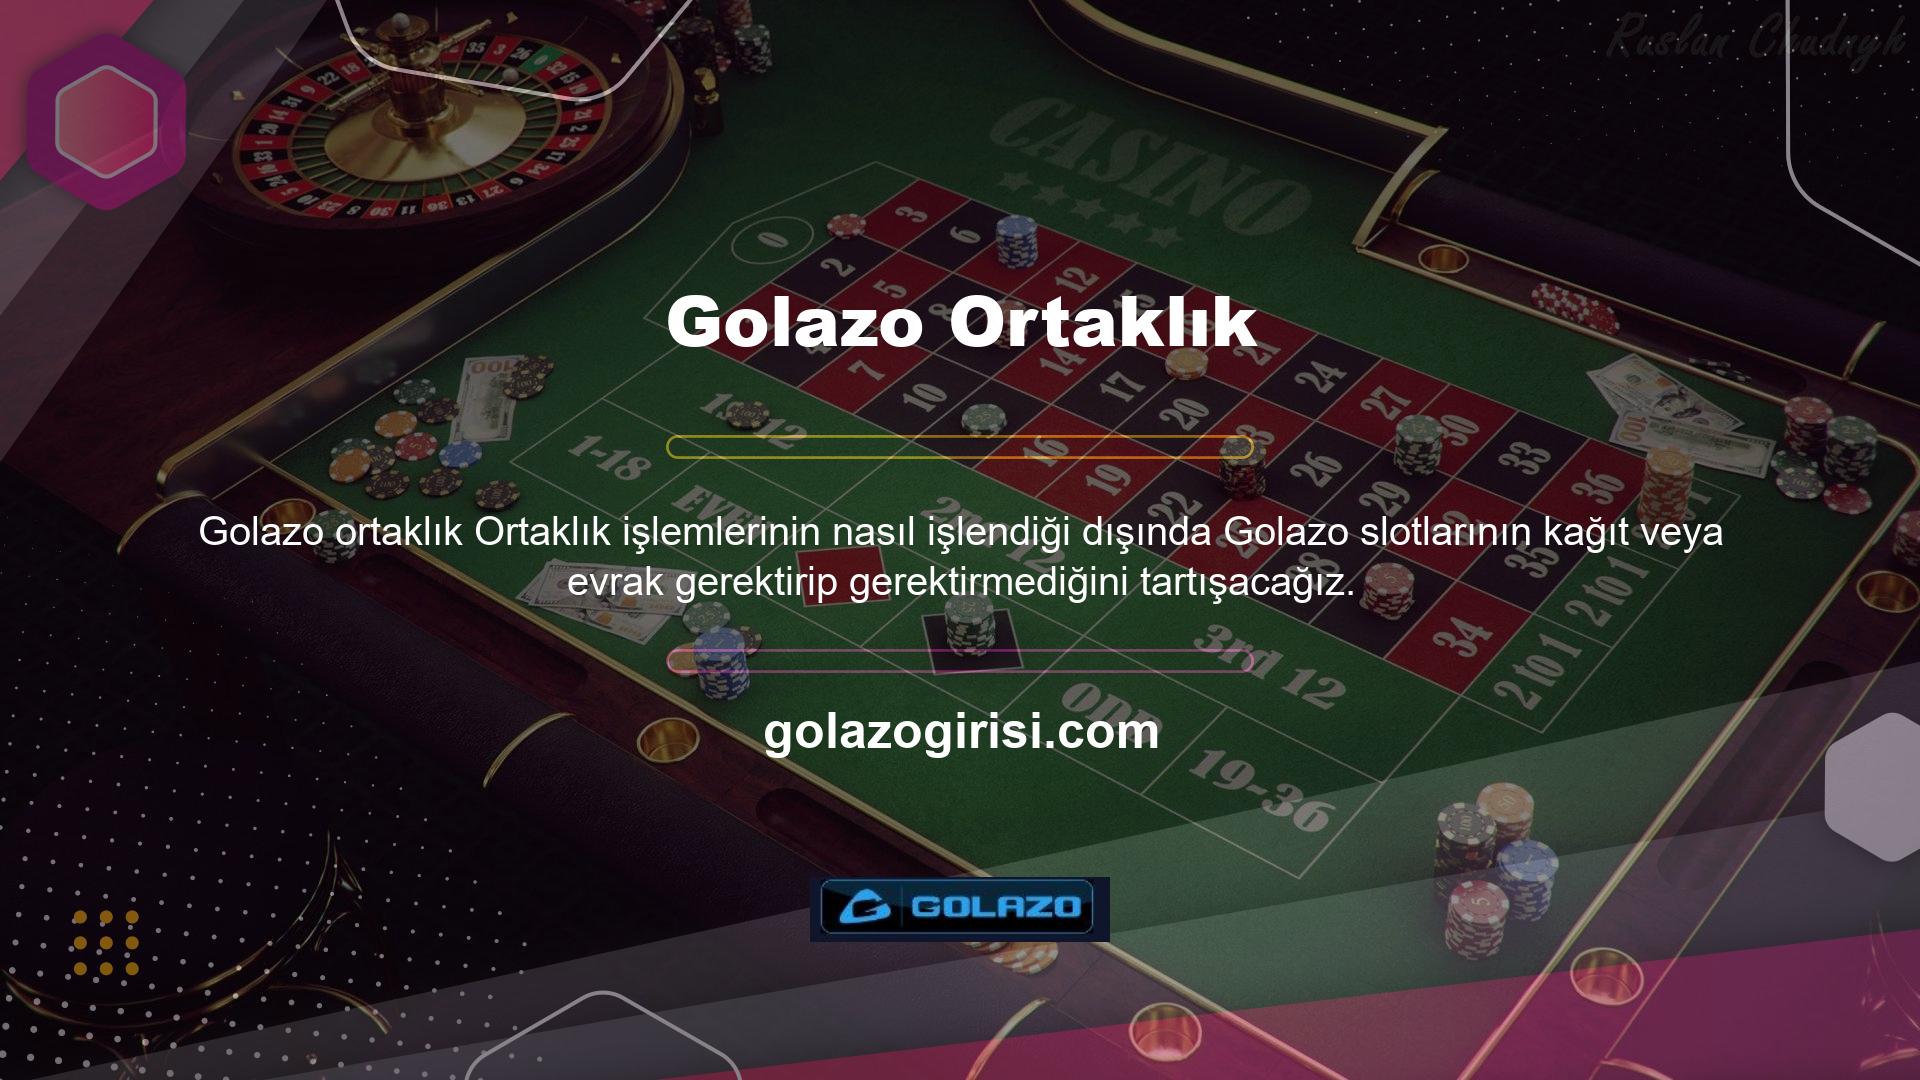 Golazo web sitesine kayıt olduktan sonra sağ üst köşede yer alan "Kayıt Ol" butonuna tıklamanız gerekmektedir